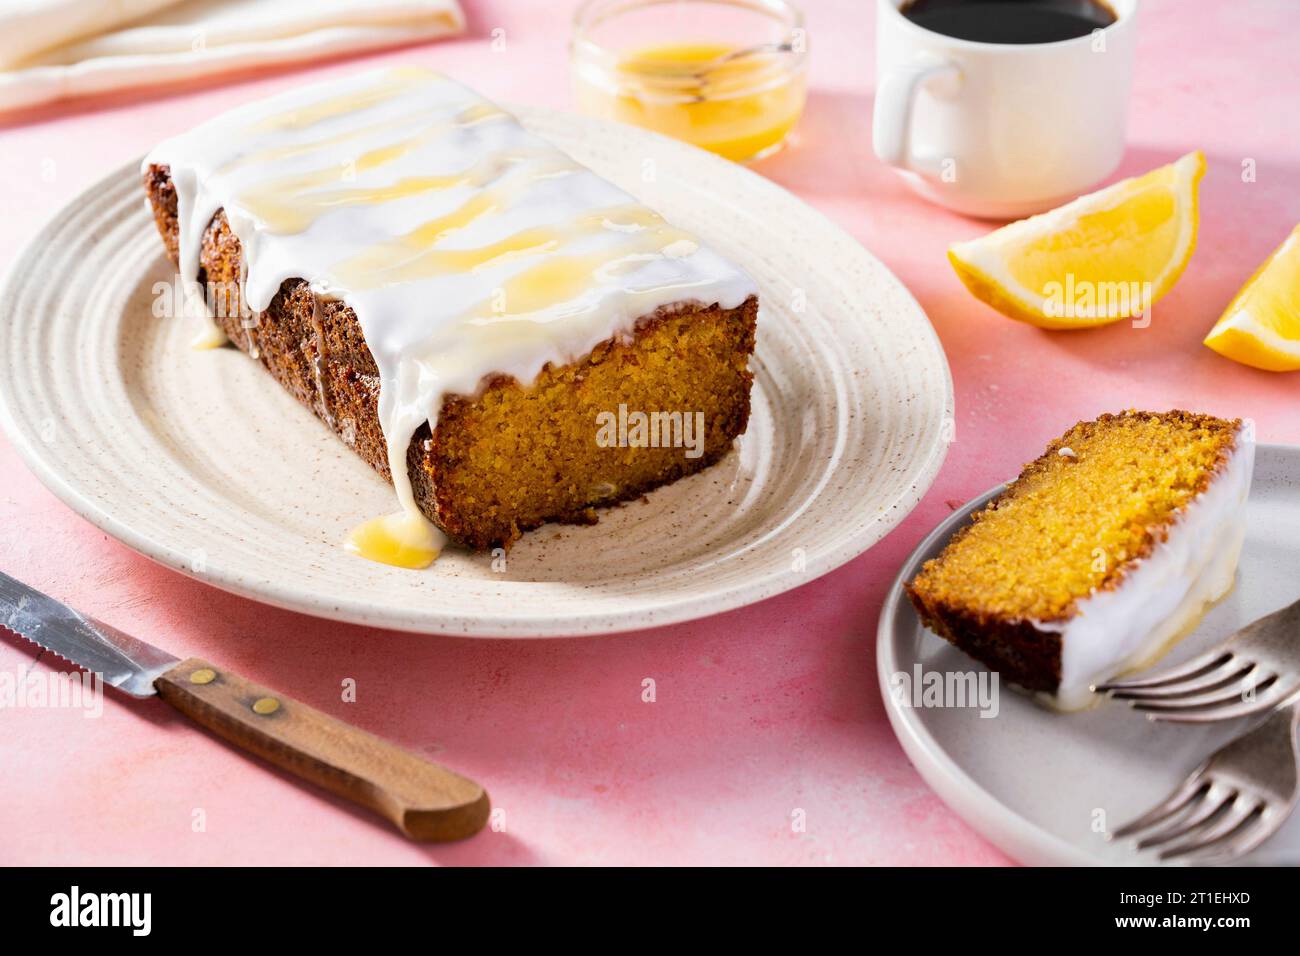 Lemon cake with icing Stock Photo